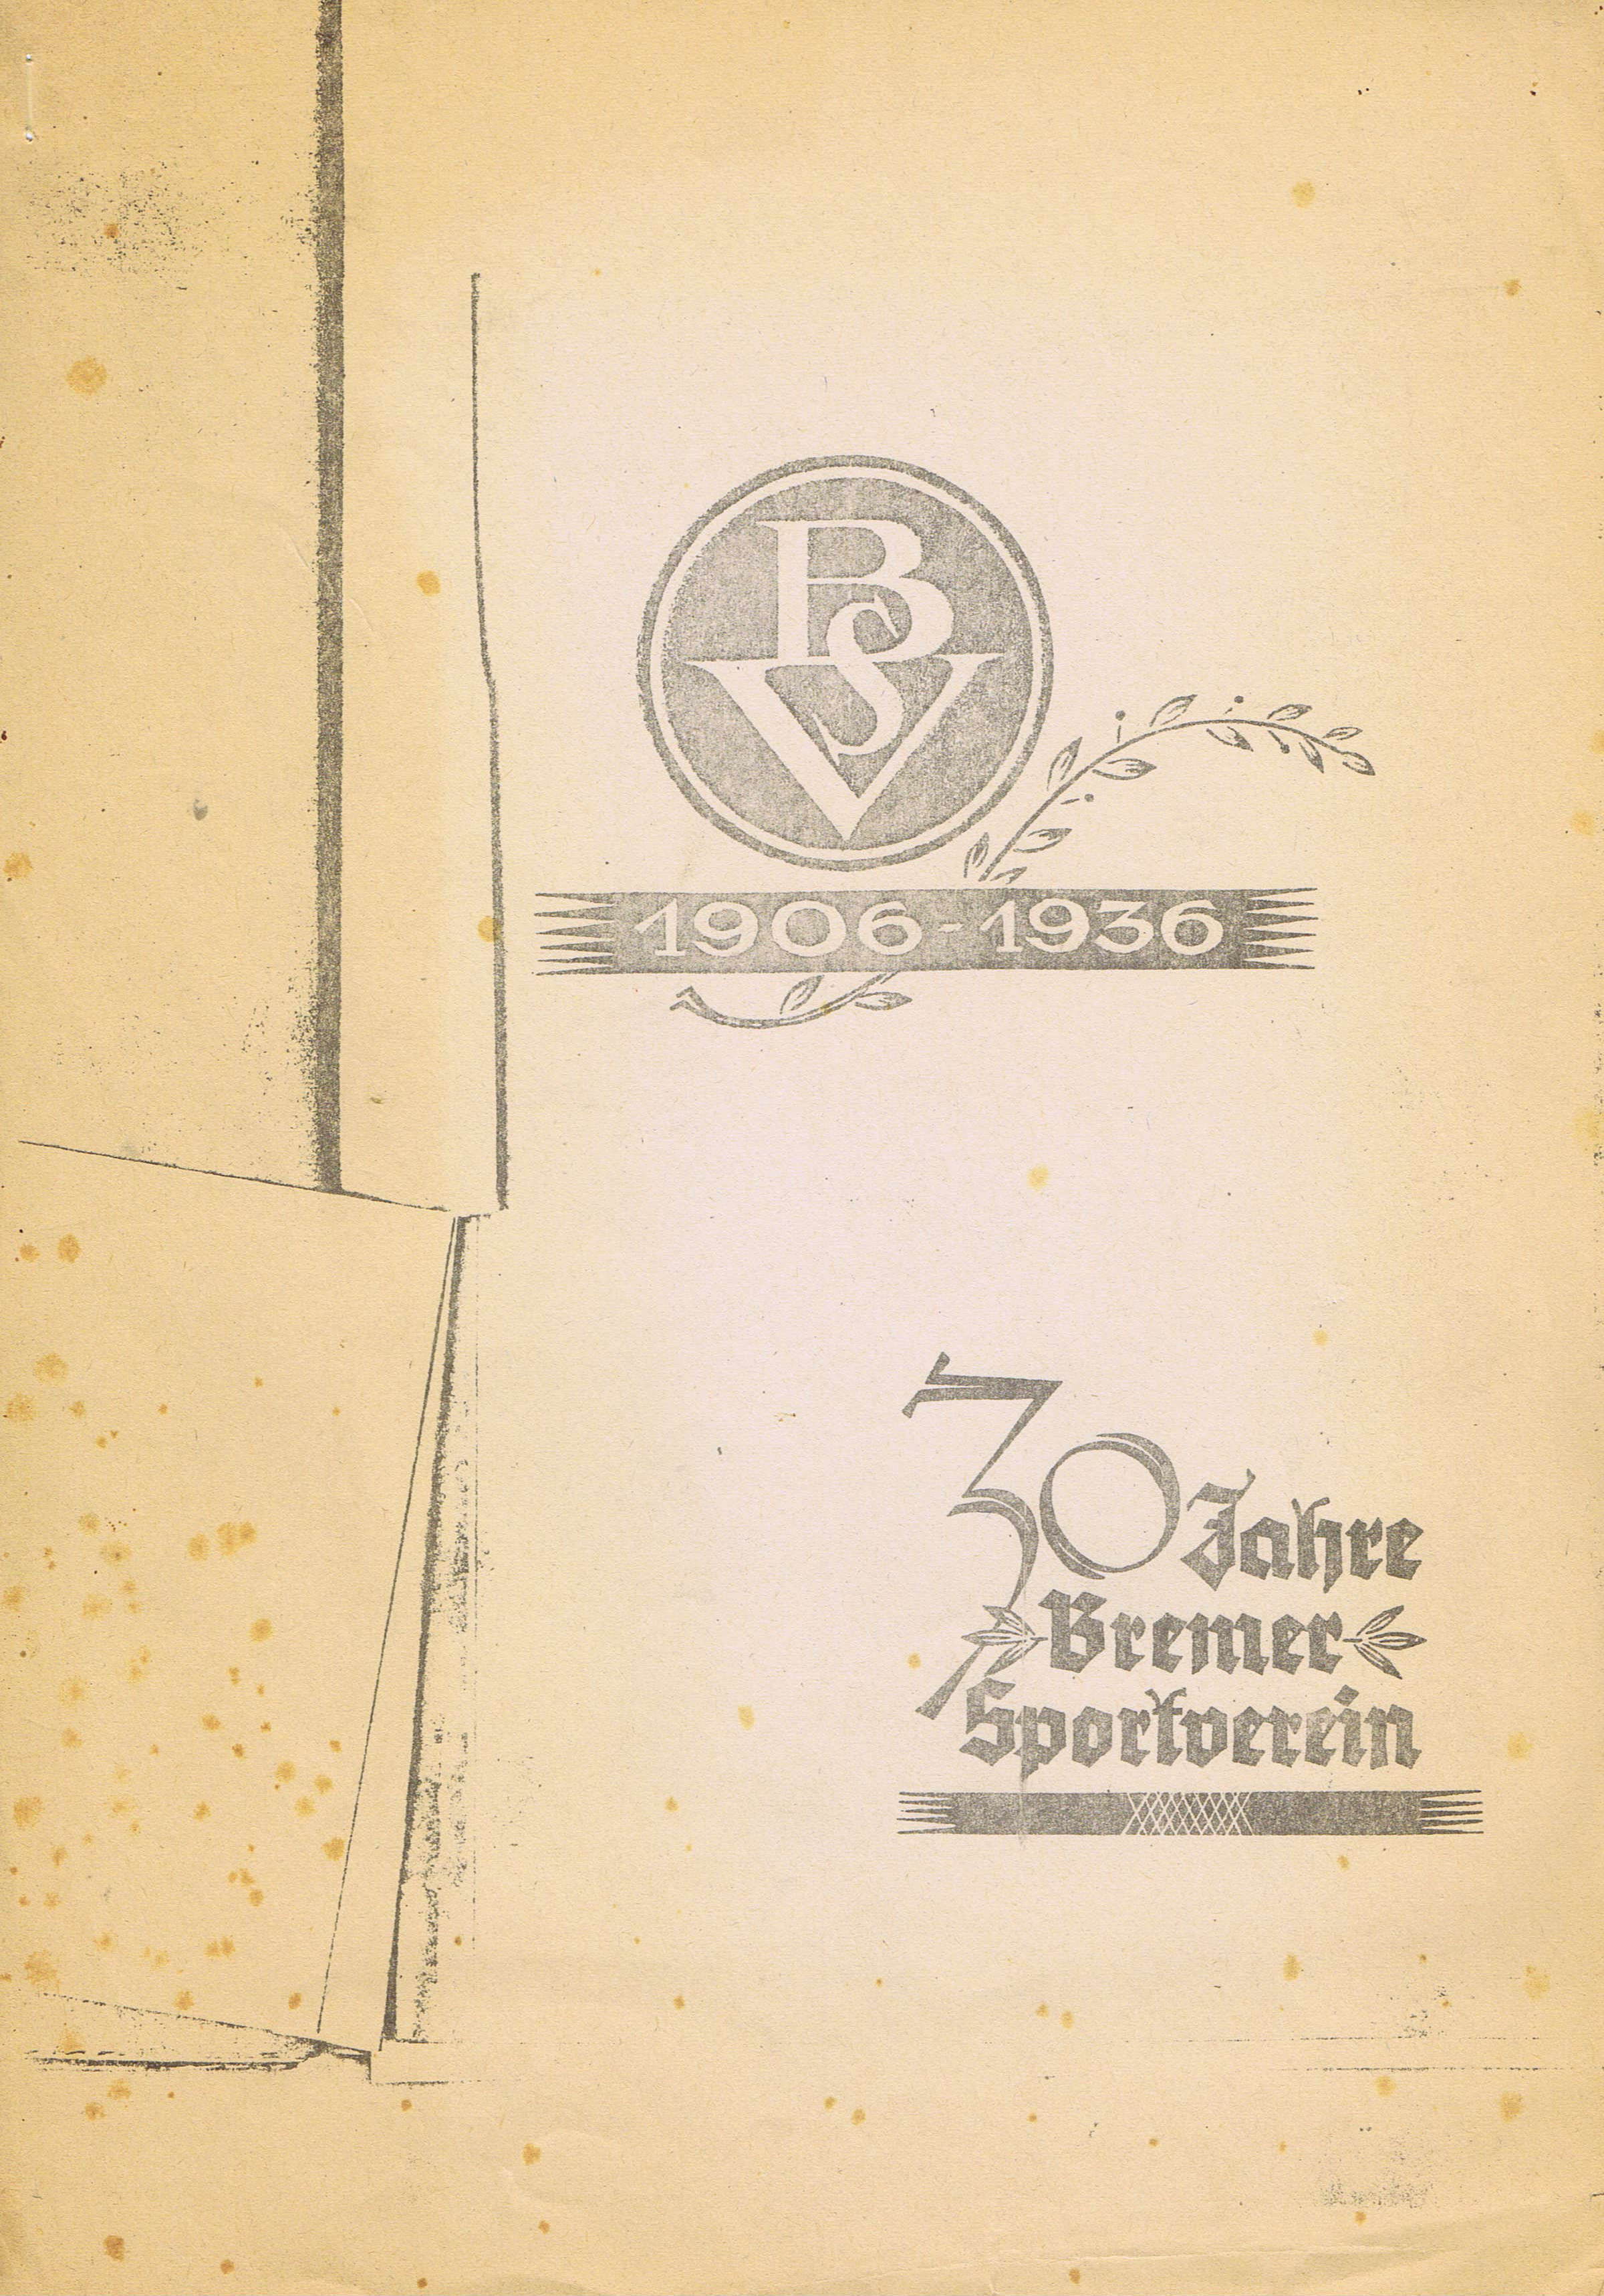 30 Jahre Bremer Sport-Verein